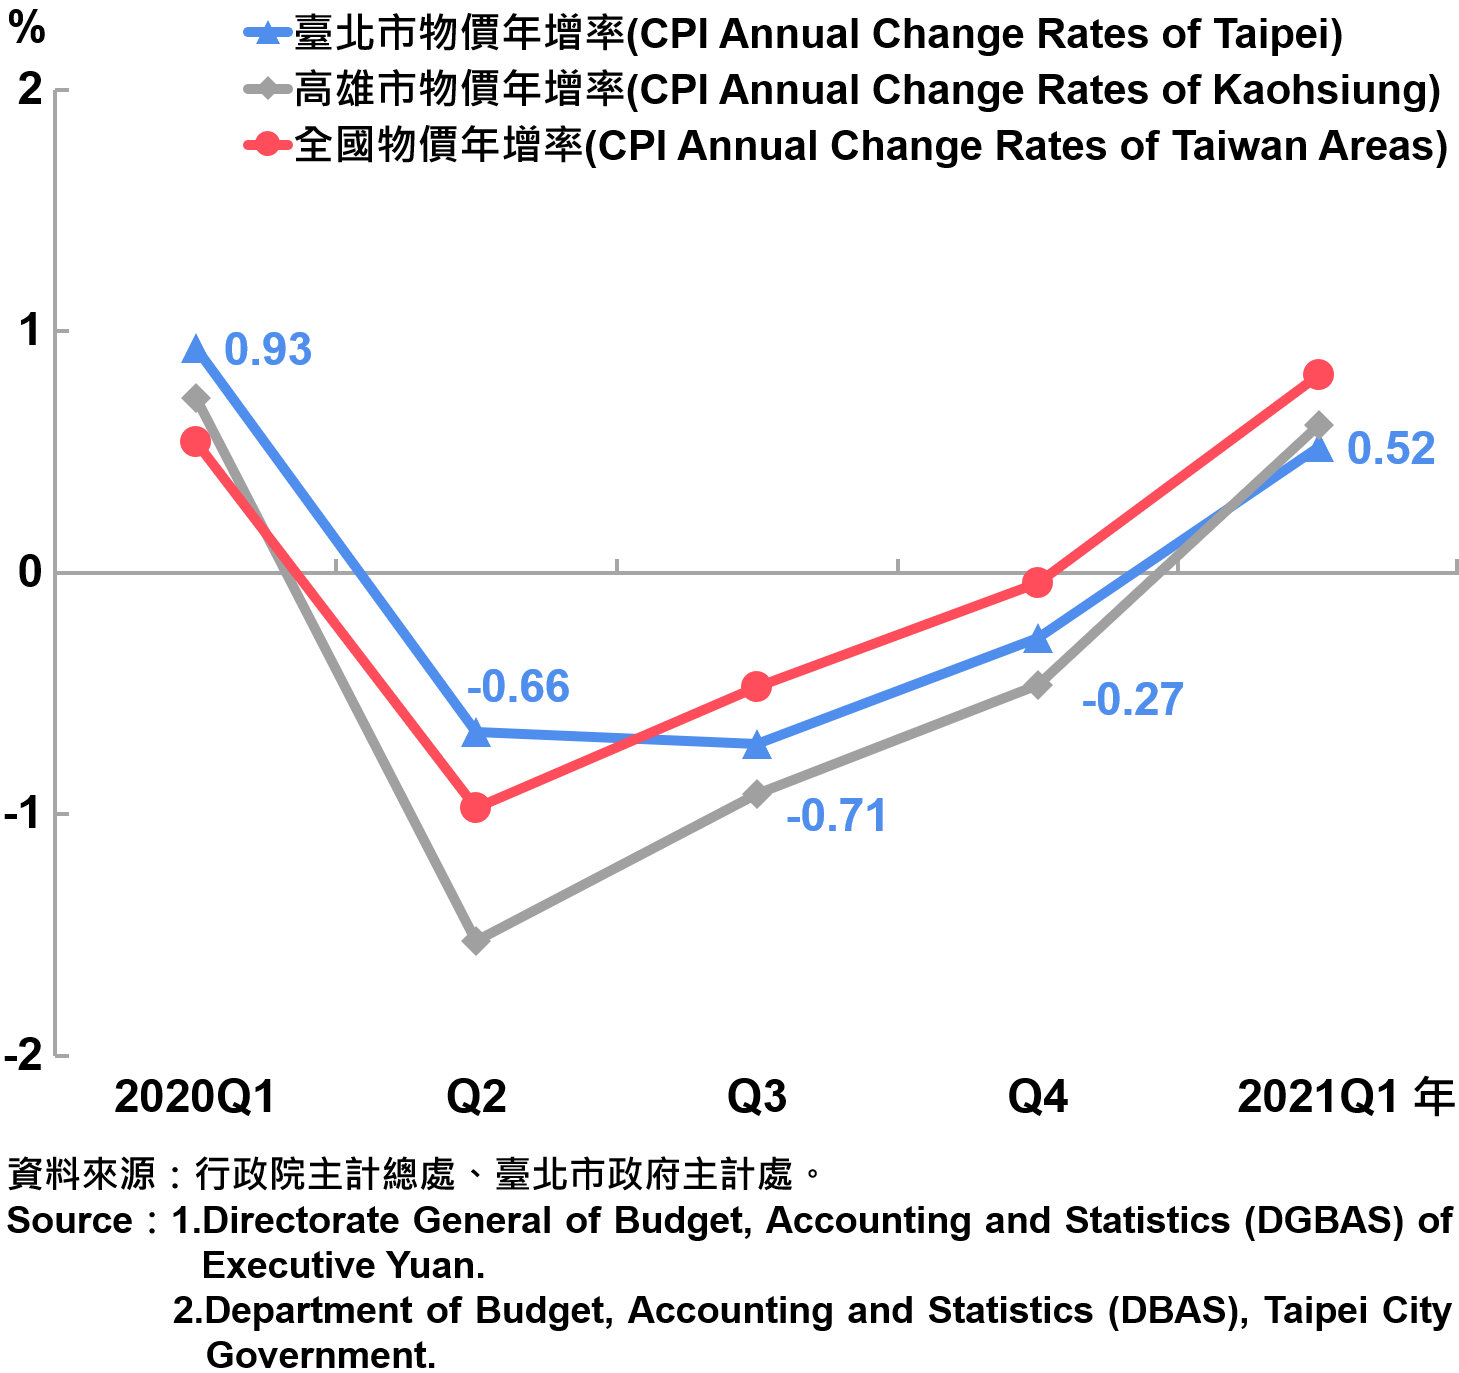 臺北市消費者物價指數（CPI）年增率—2021Q1 The Changes of CPI in Taipei City—2021Q1